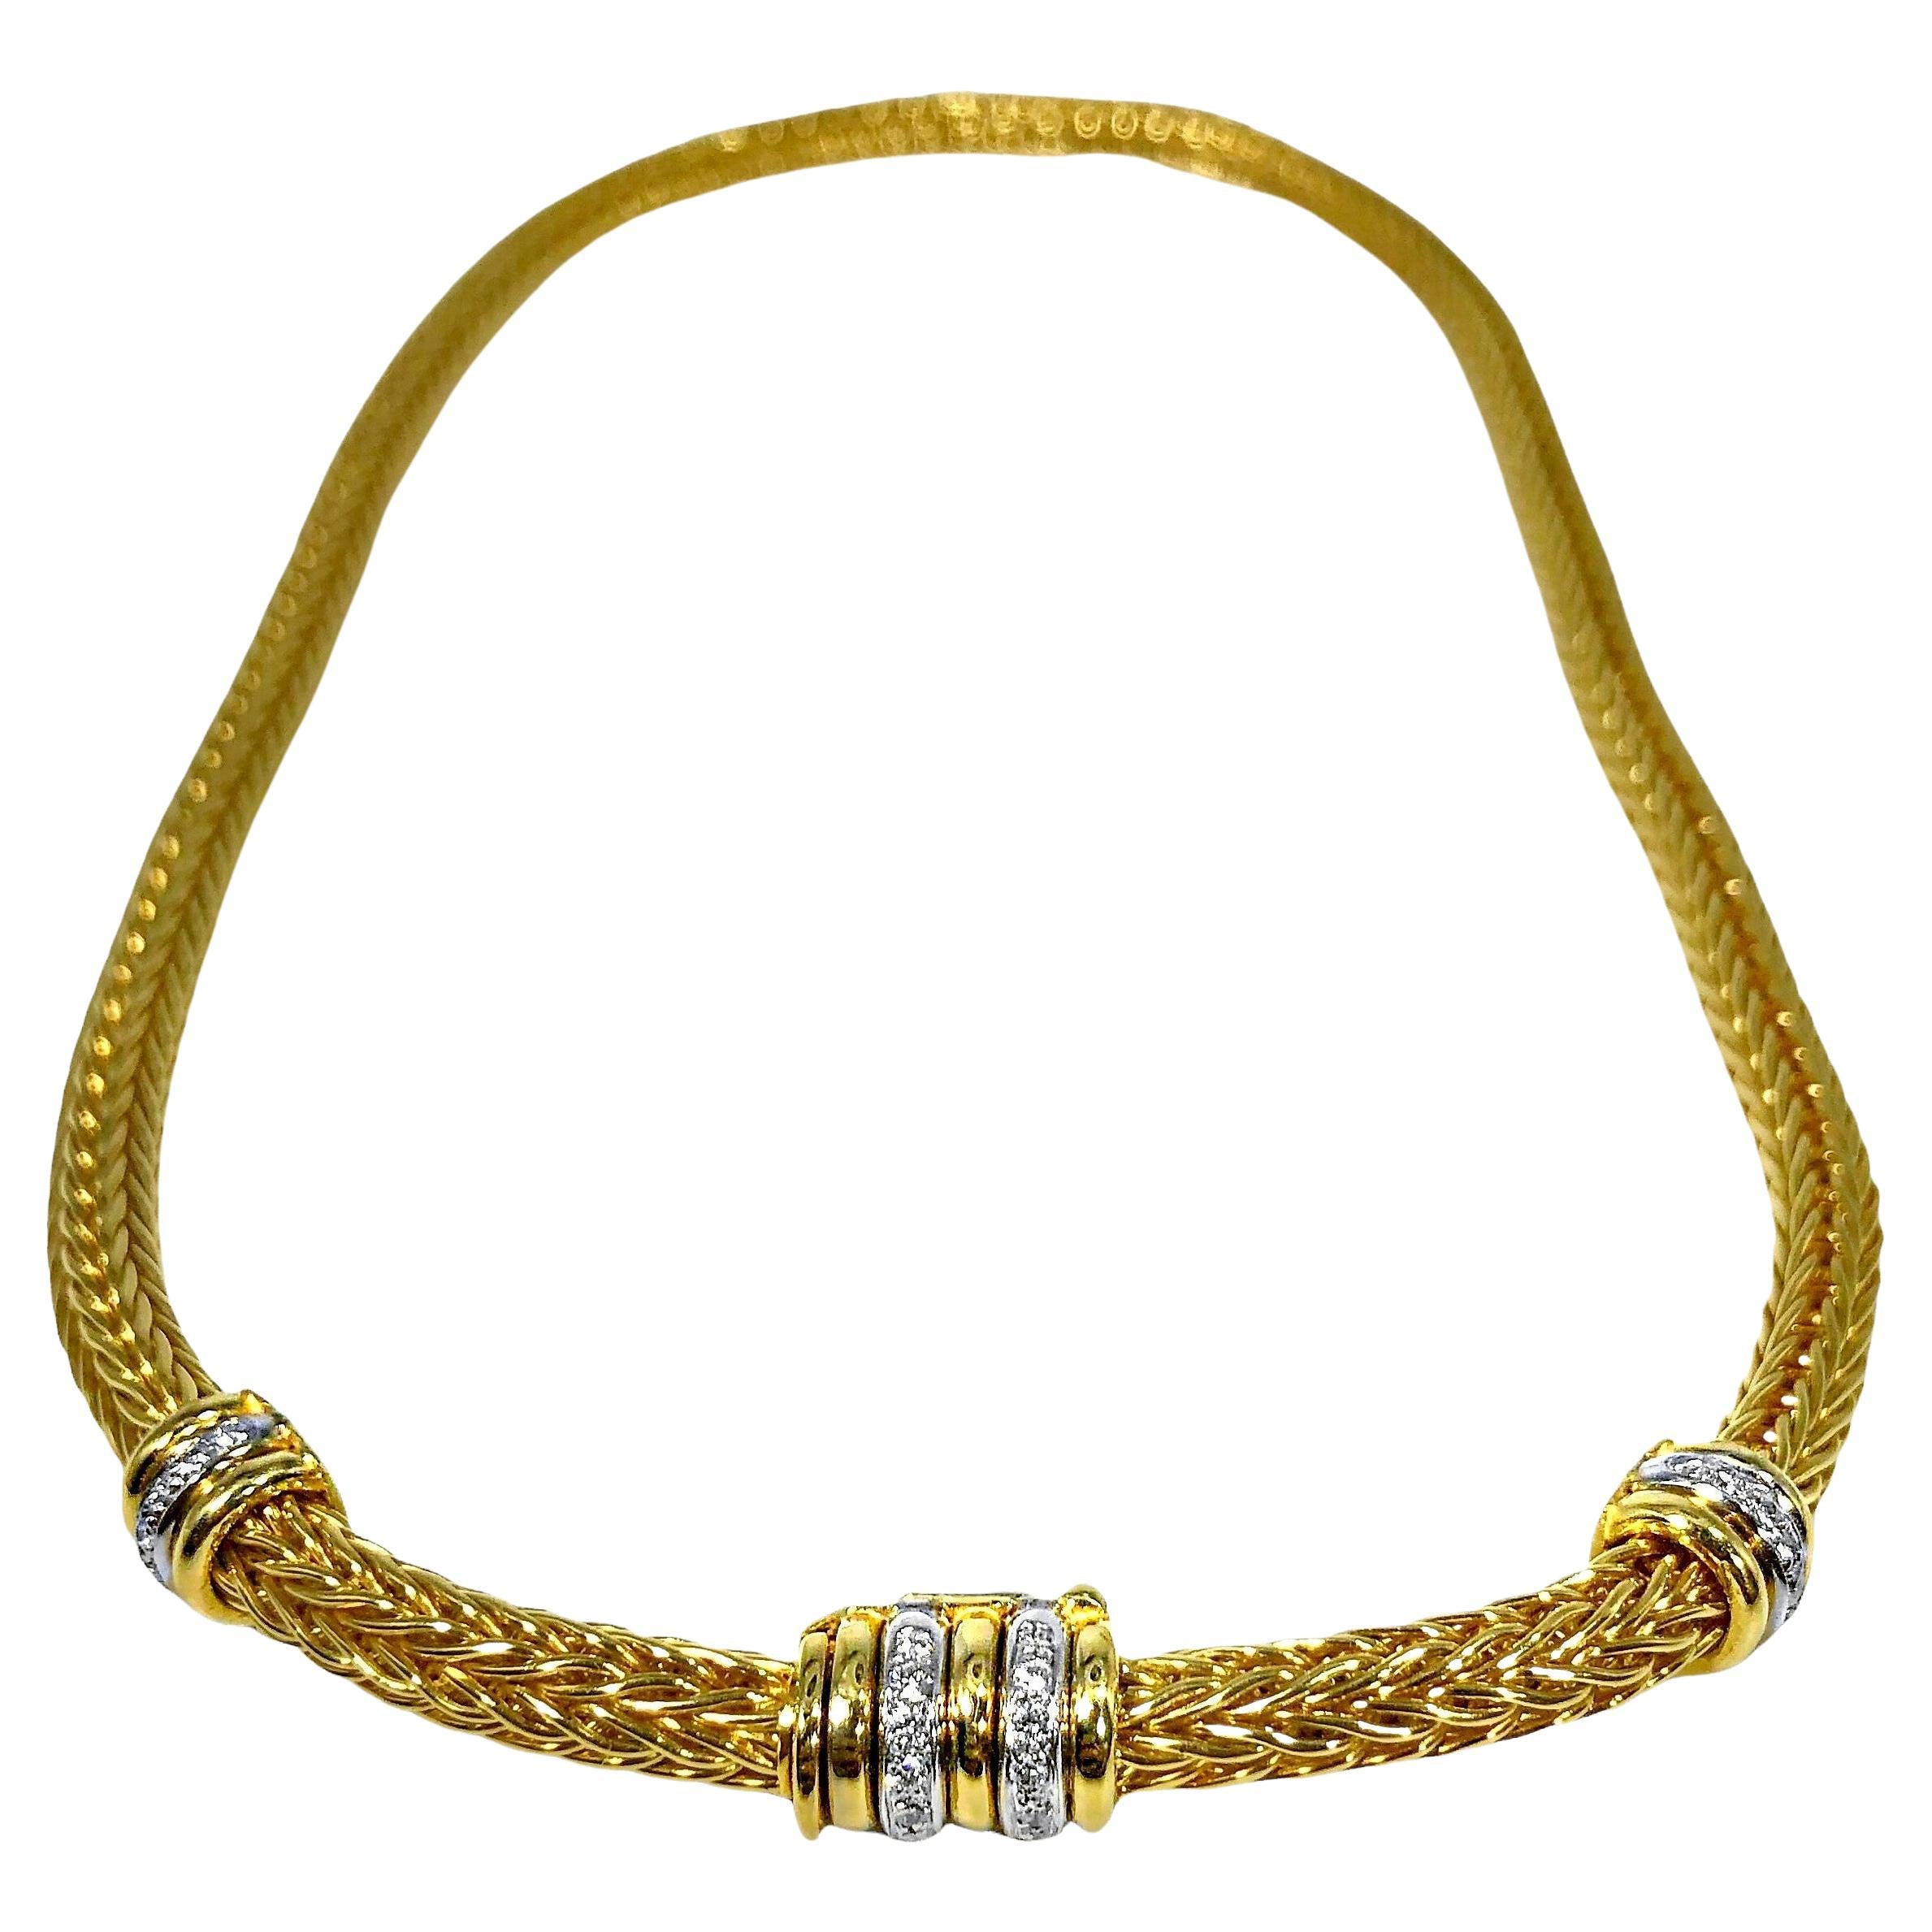 Striking La Pepita Round Wheat Link 18k Yellow Gold and Diamond Choker Necklace